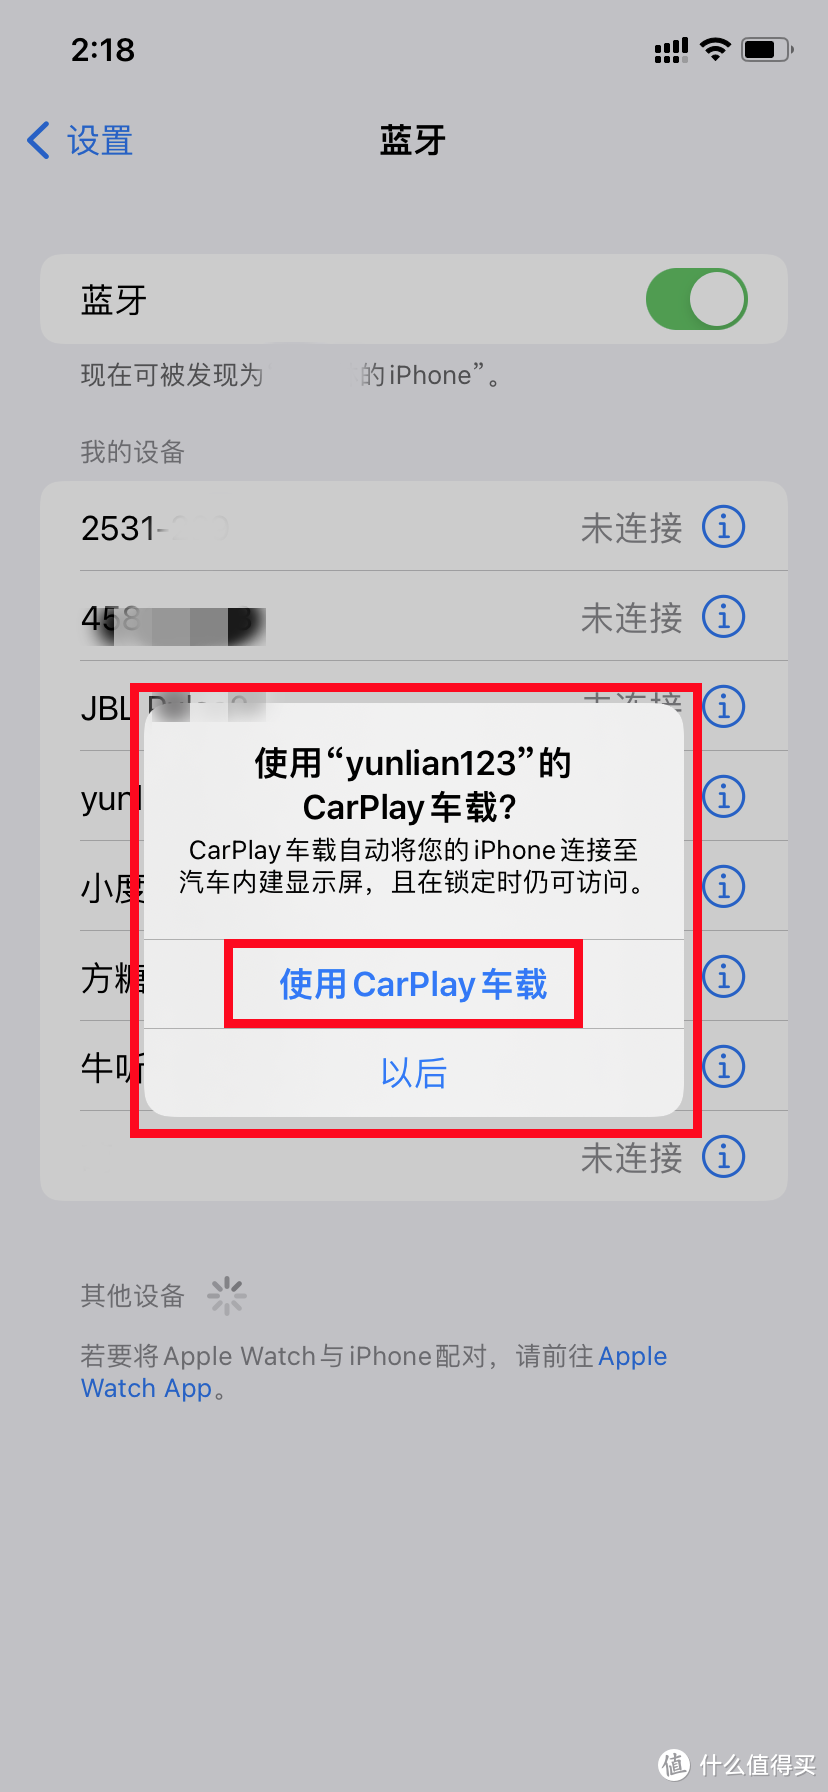 此时会弹出提示“使用yunlian123的carplay车载”